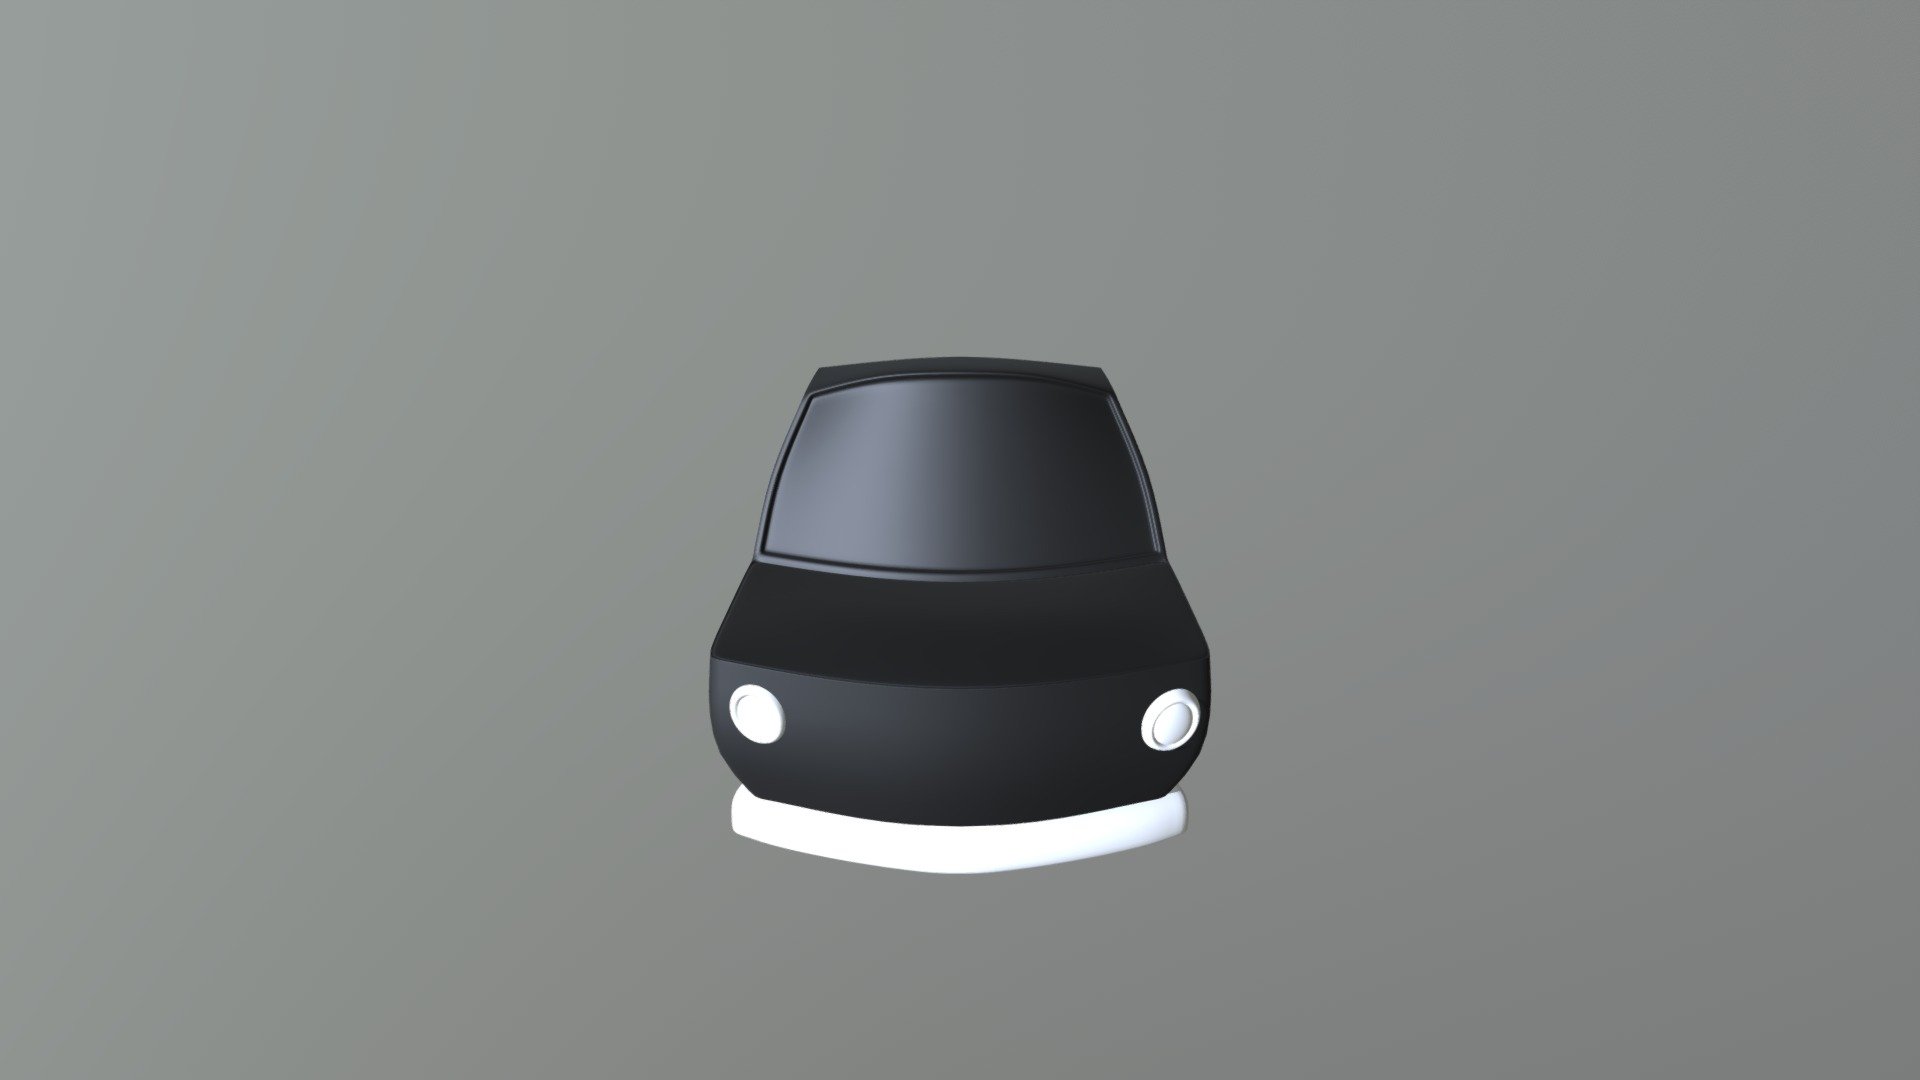 Base Carro Cartoon / Base Cartoon Car - 3D model by paulo.costa0194 3d model